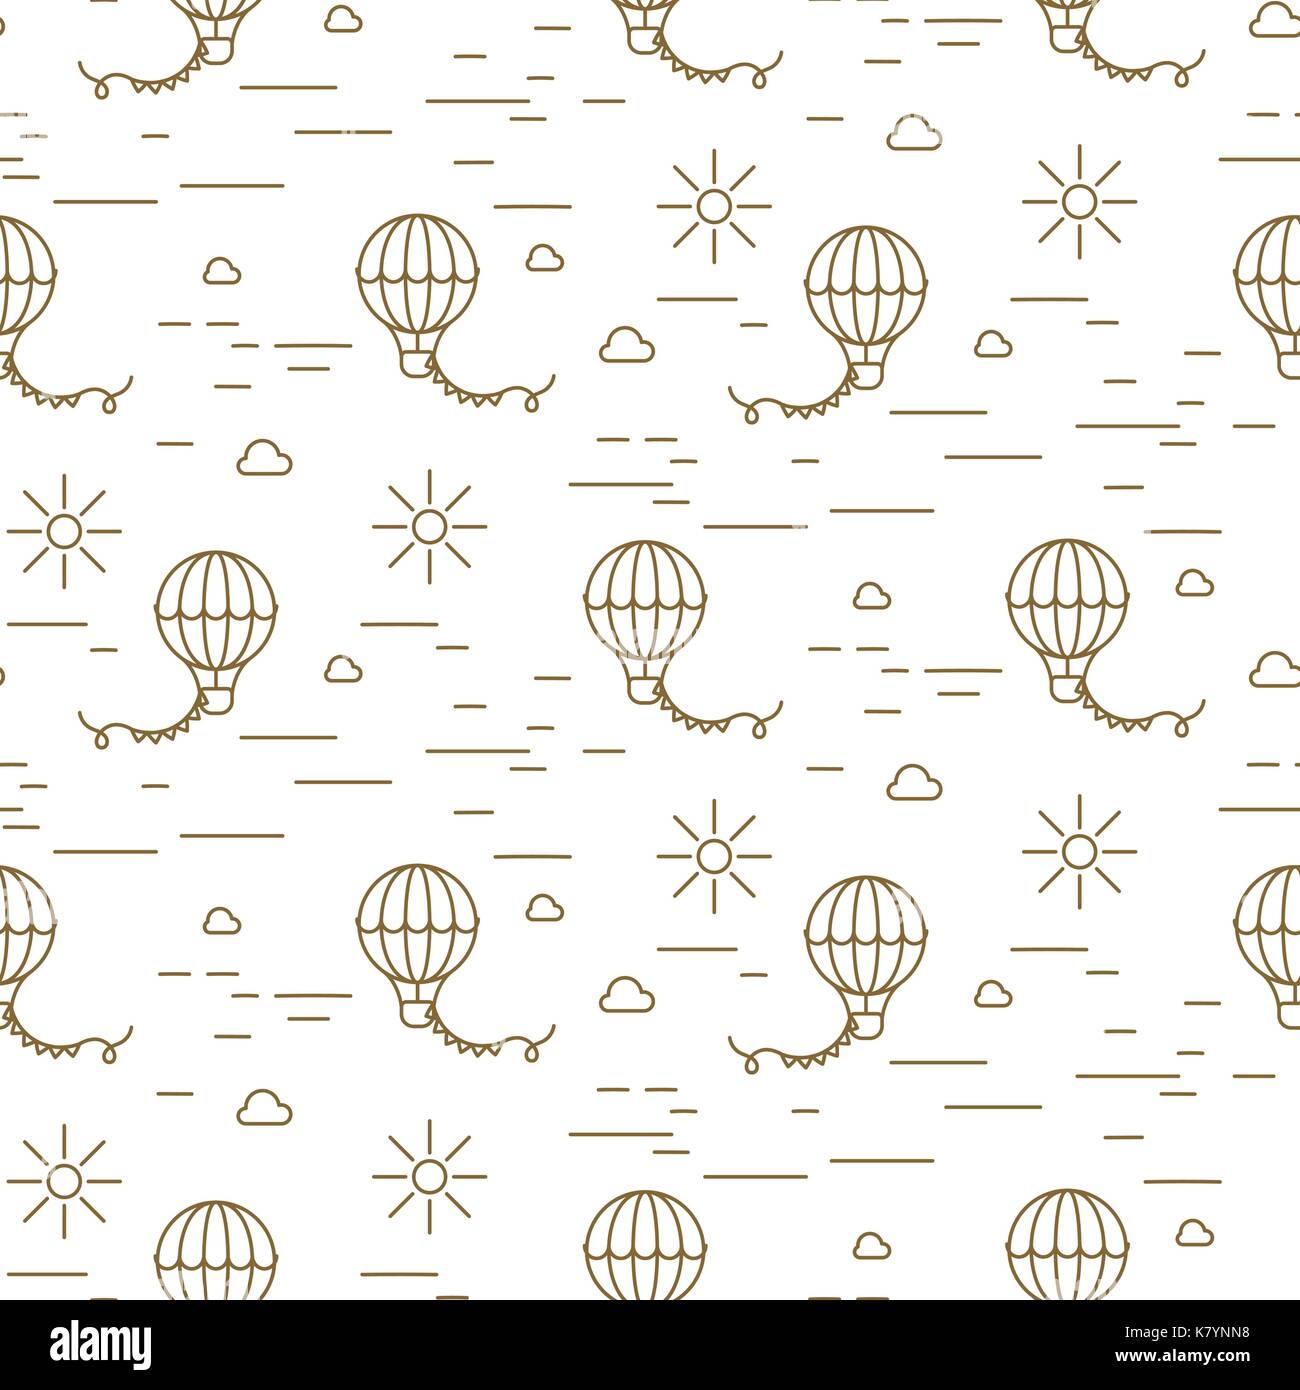 Ballon einfache Linie gold und weiß nahtlose Vektor Muster. Stock Vektor